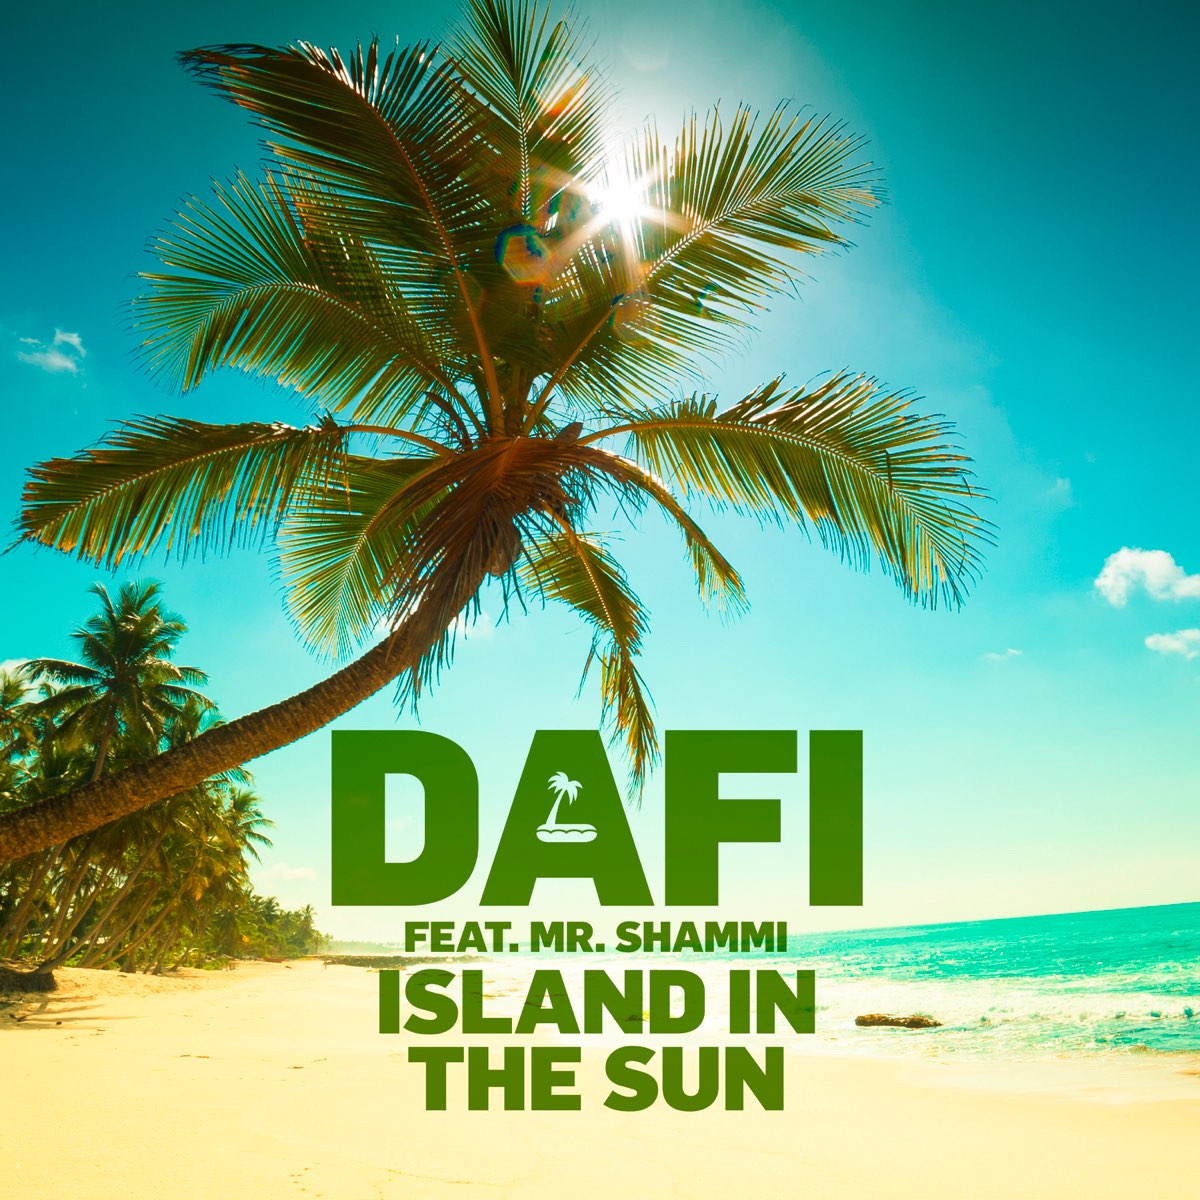 Island feat. Island in the Sun. Sun Dafi. Песня Island in the Sun. A Desert Island in the Sun.